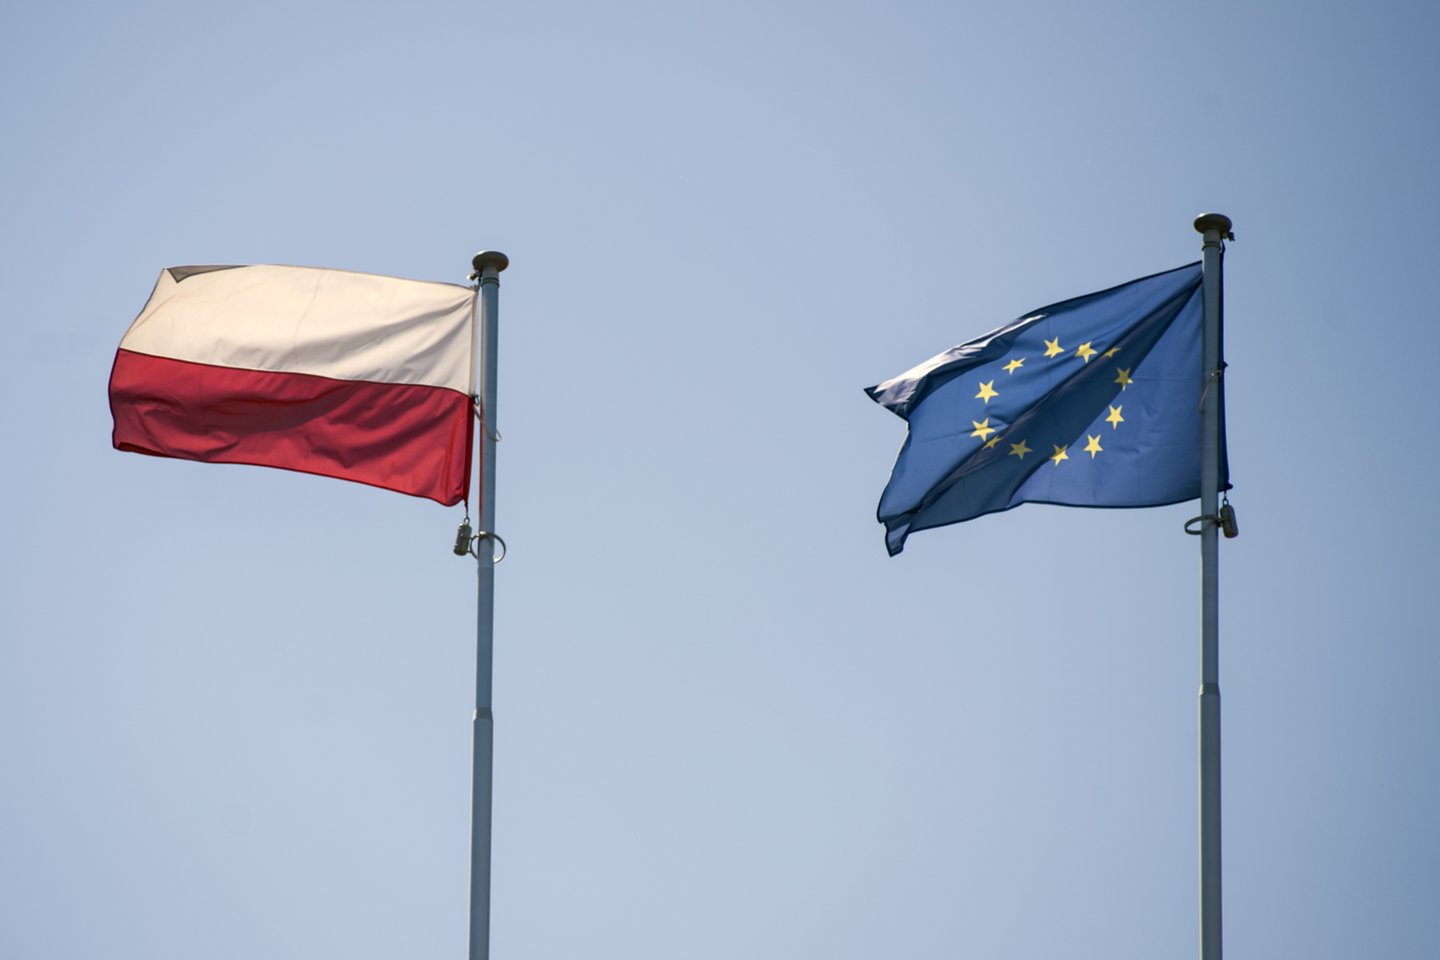 Šis ginčas gali užtraukti Lenkijai finansinių nuobaudų ir išprovokuoti pavojingą politinį susiskaldymą ES.<br>ZUMA Press/Scanpix nuotr.